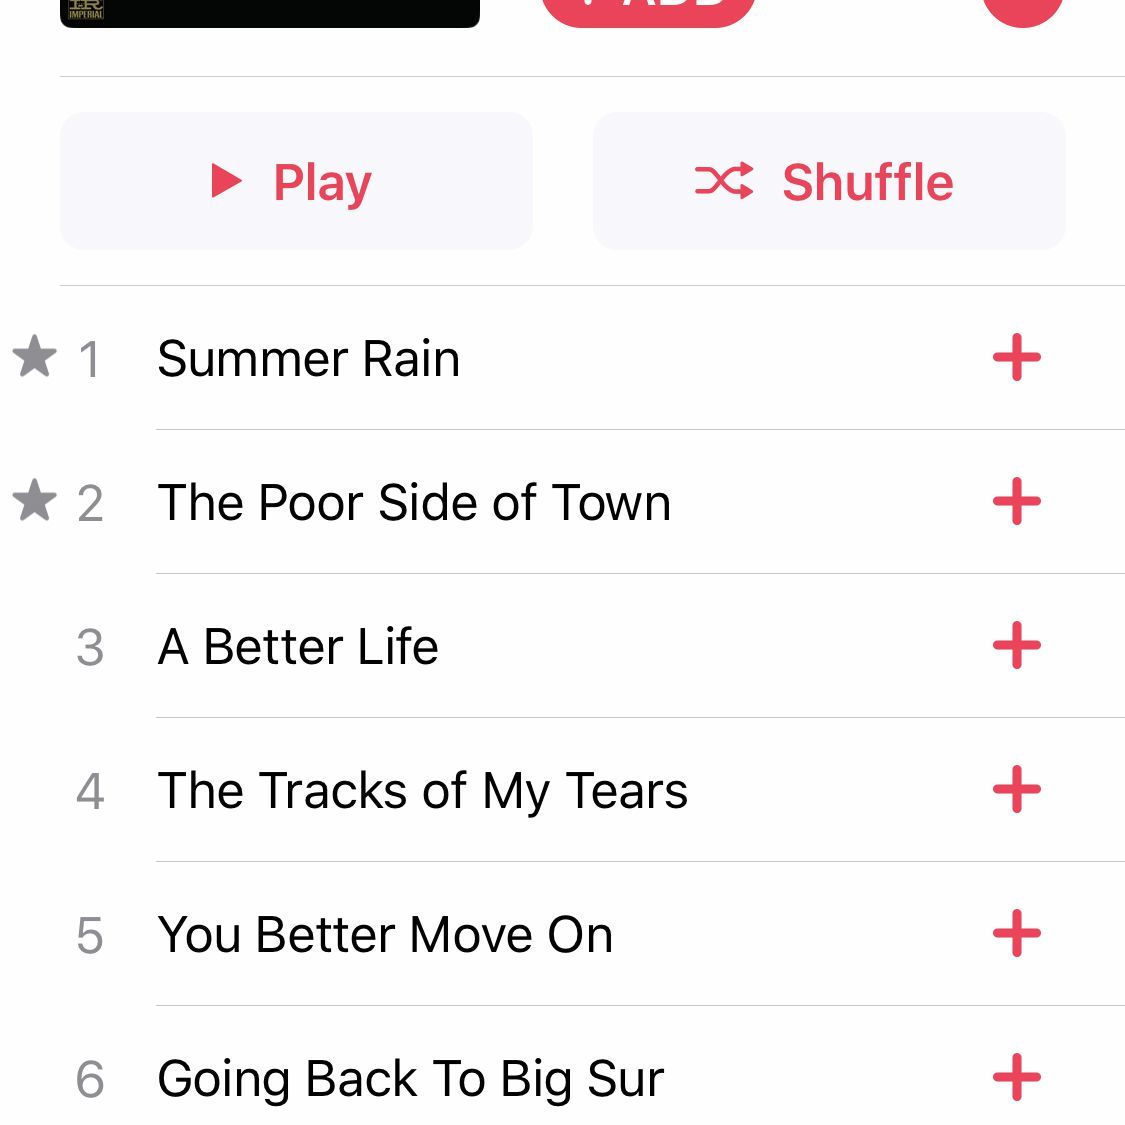 Скриншот просмотра альбома в Apple Music на iPhone